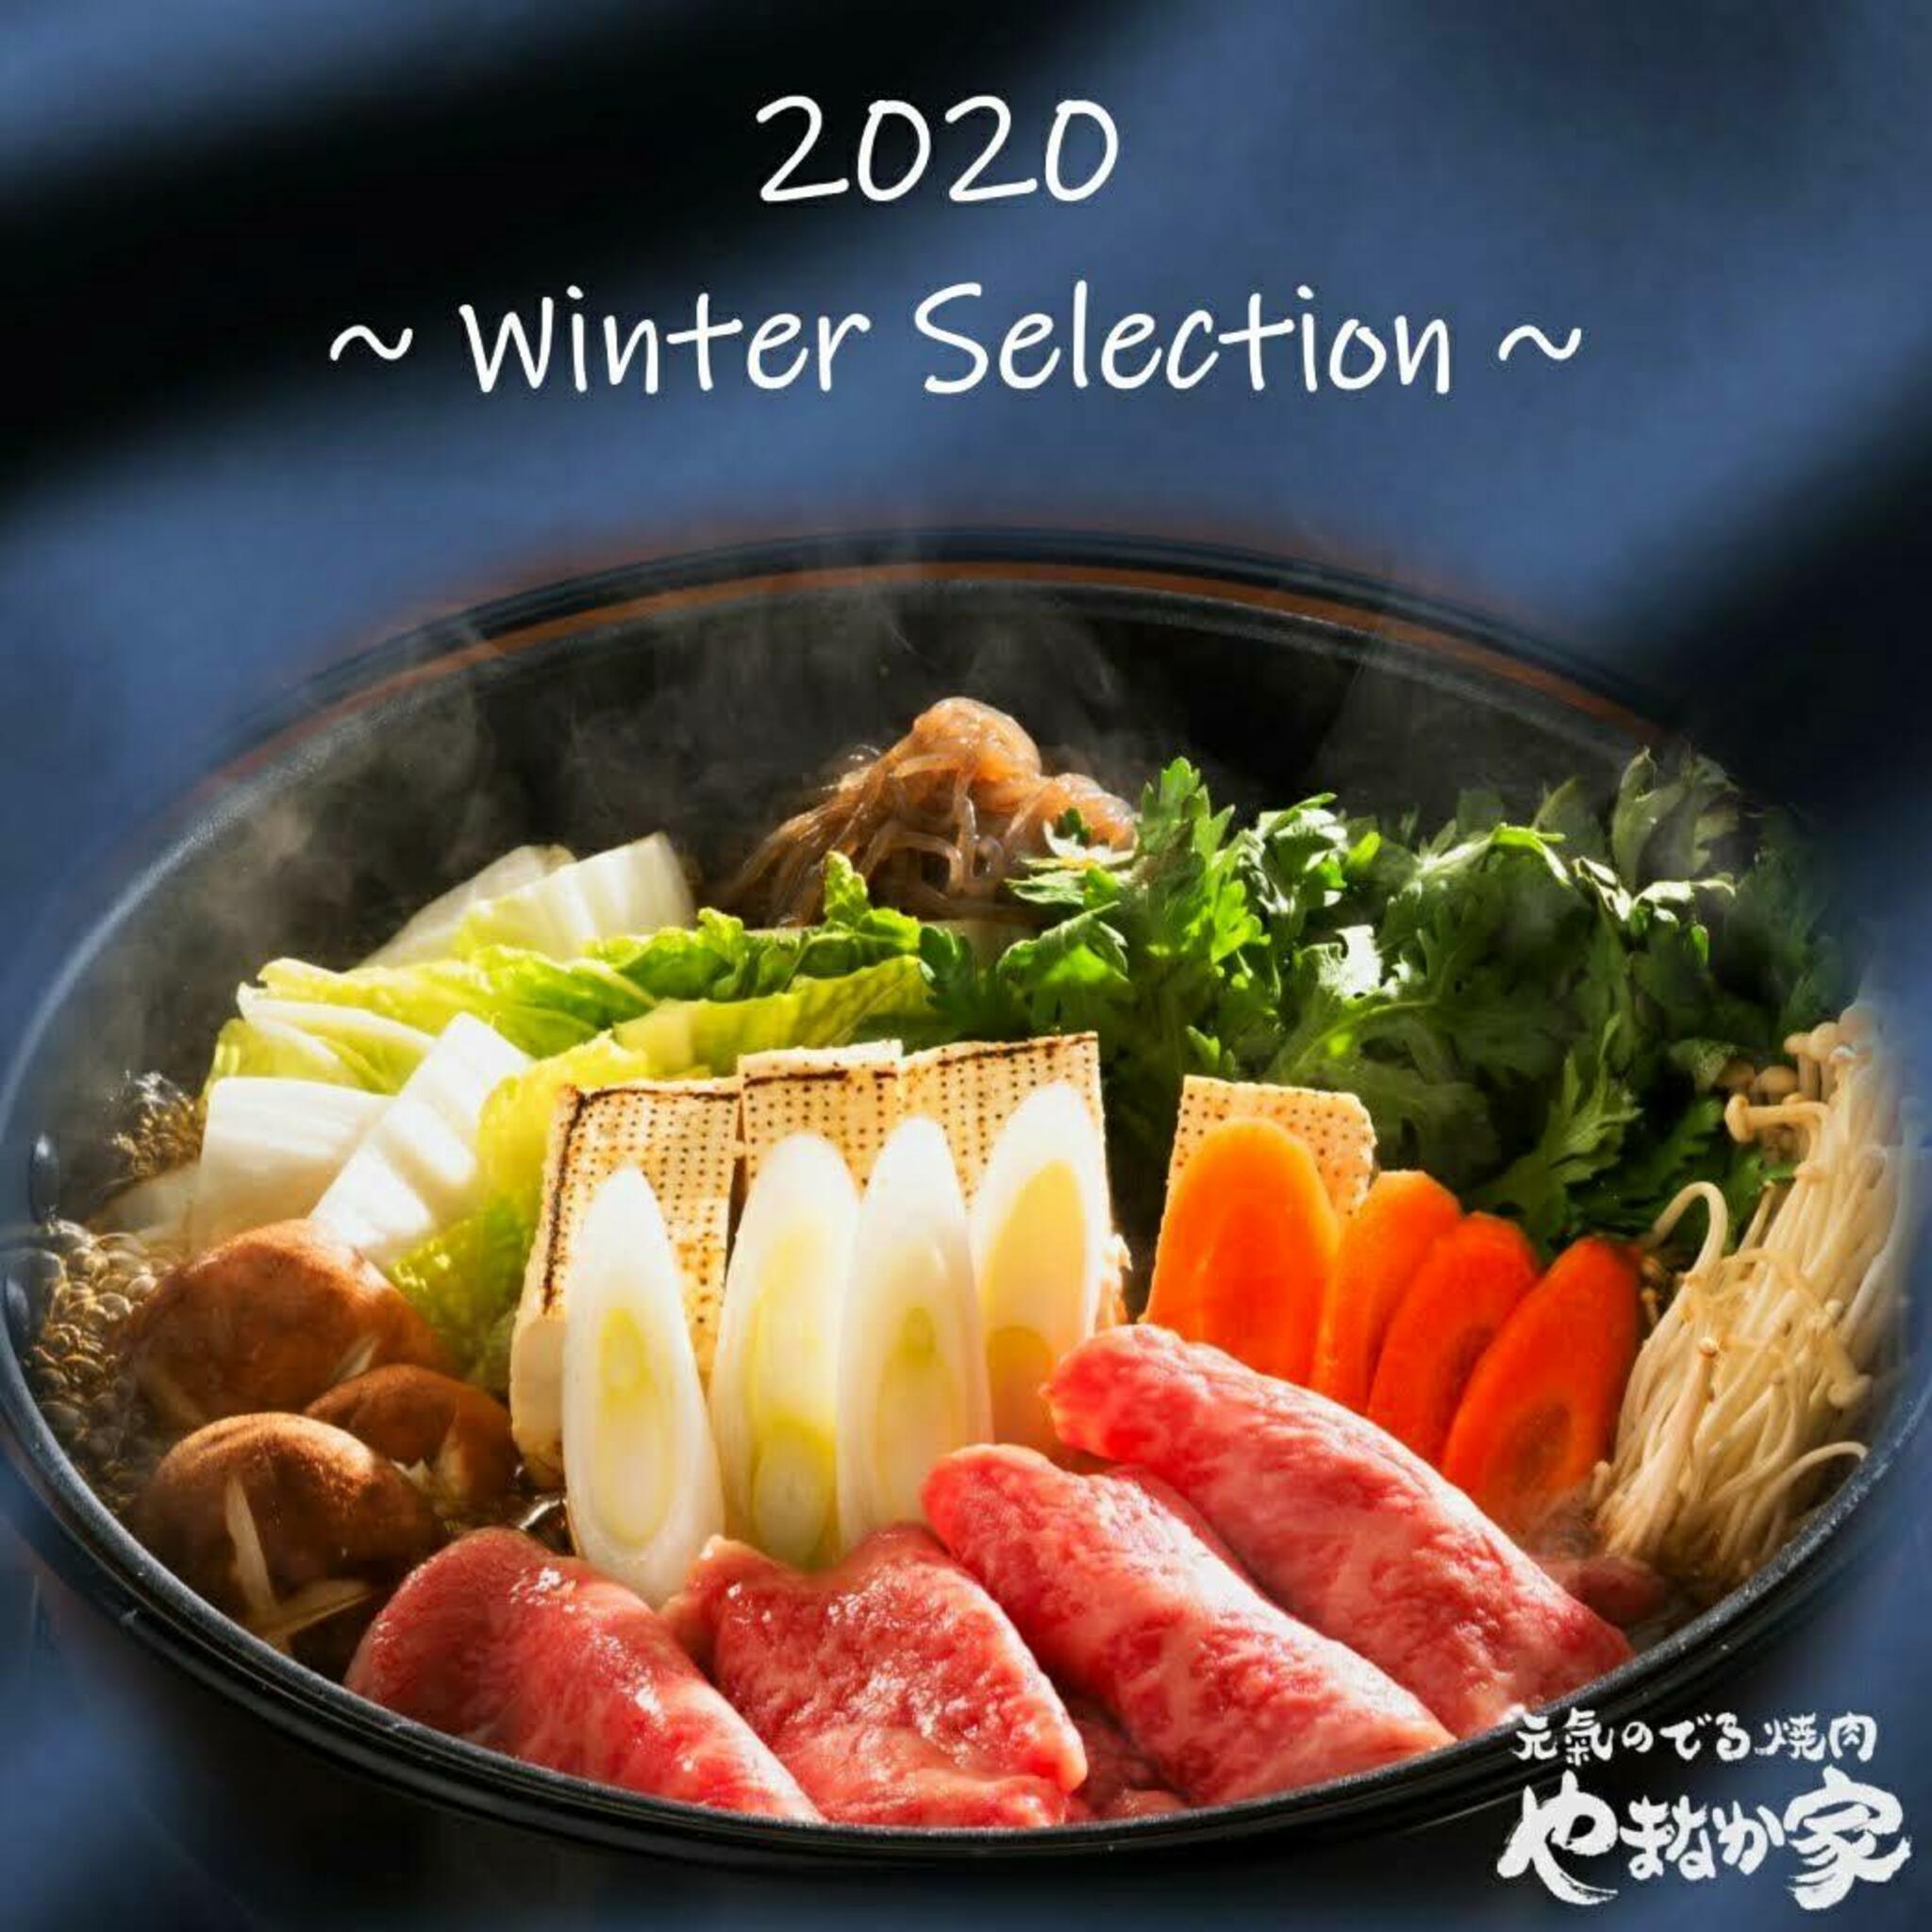 焼肉冷麺やまなか家 西多賀店からのお知らせ(【やまなか家 2020 お歳暮】 )に関する写真